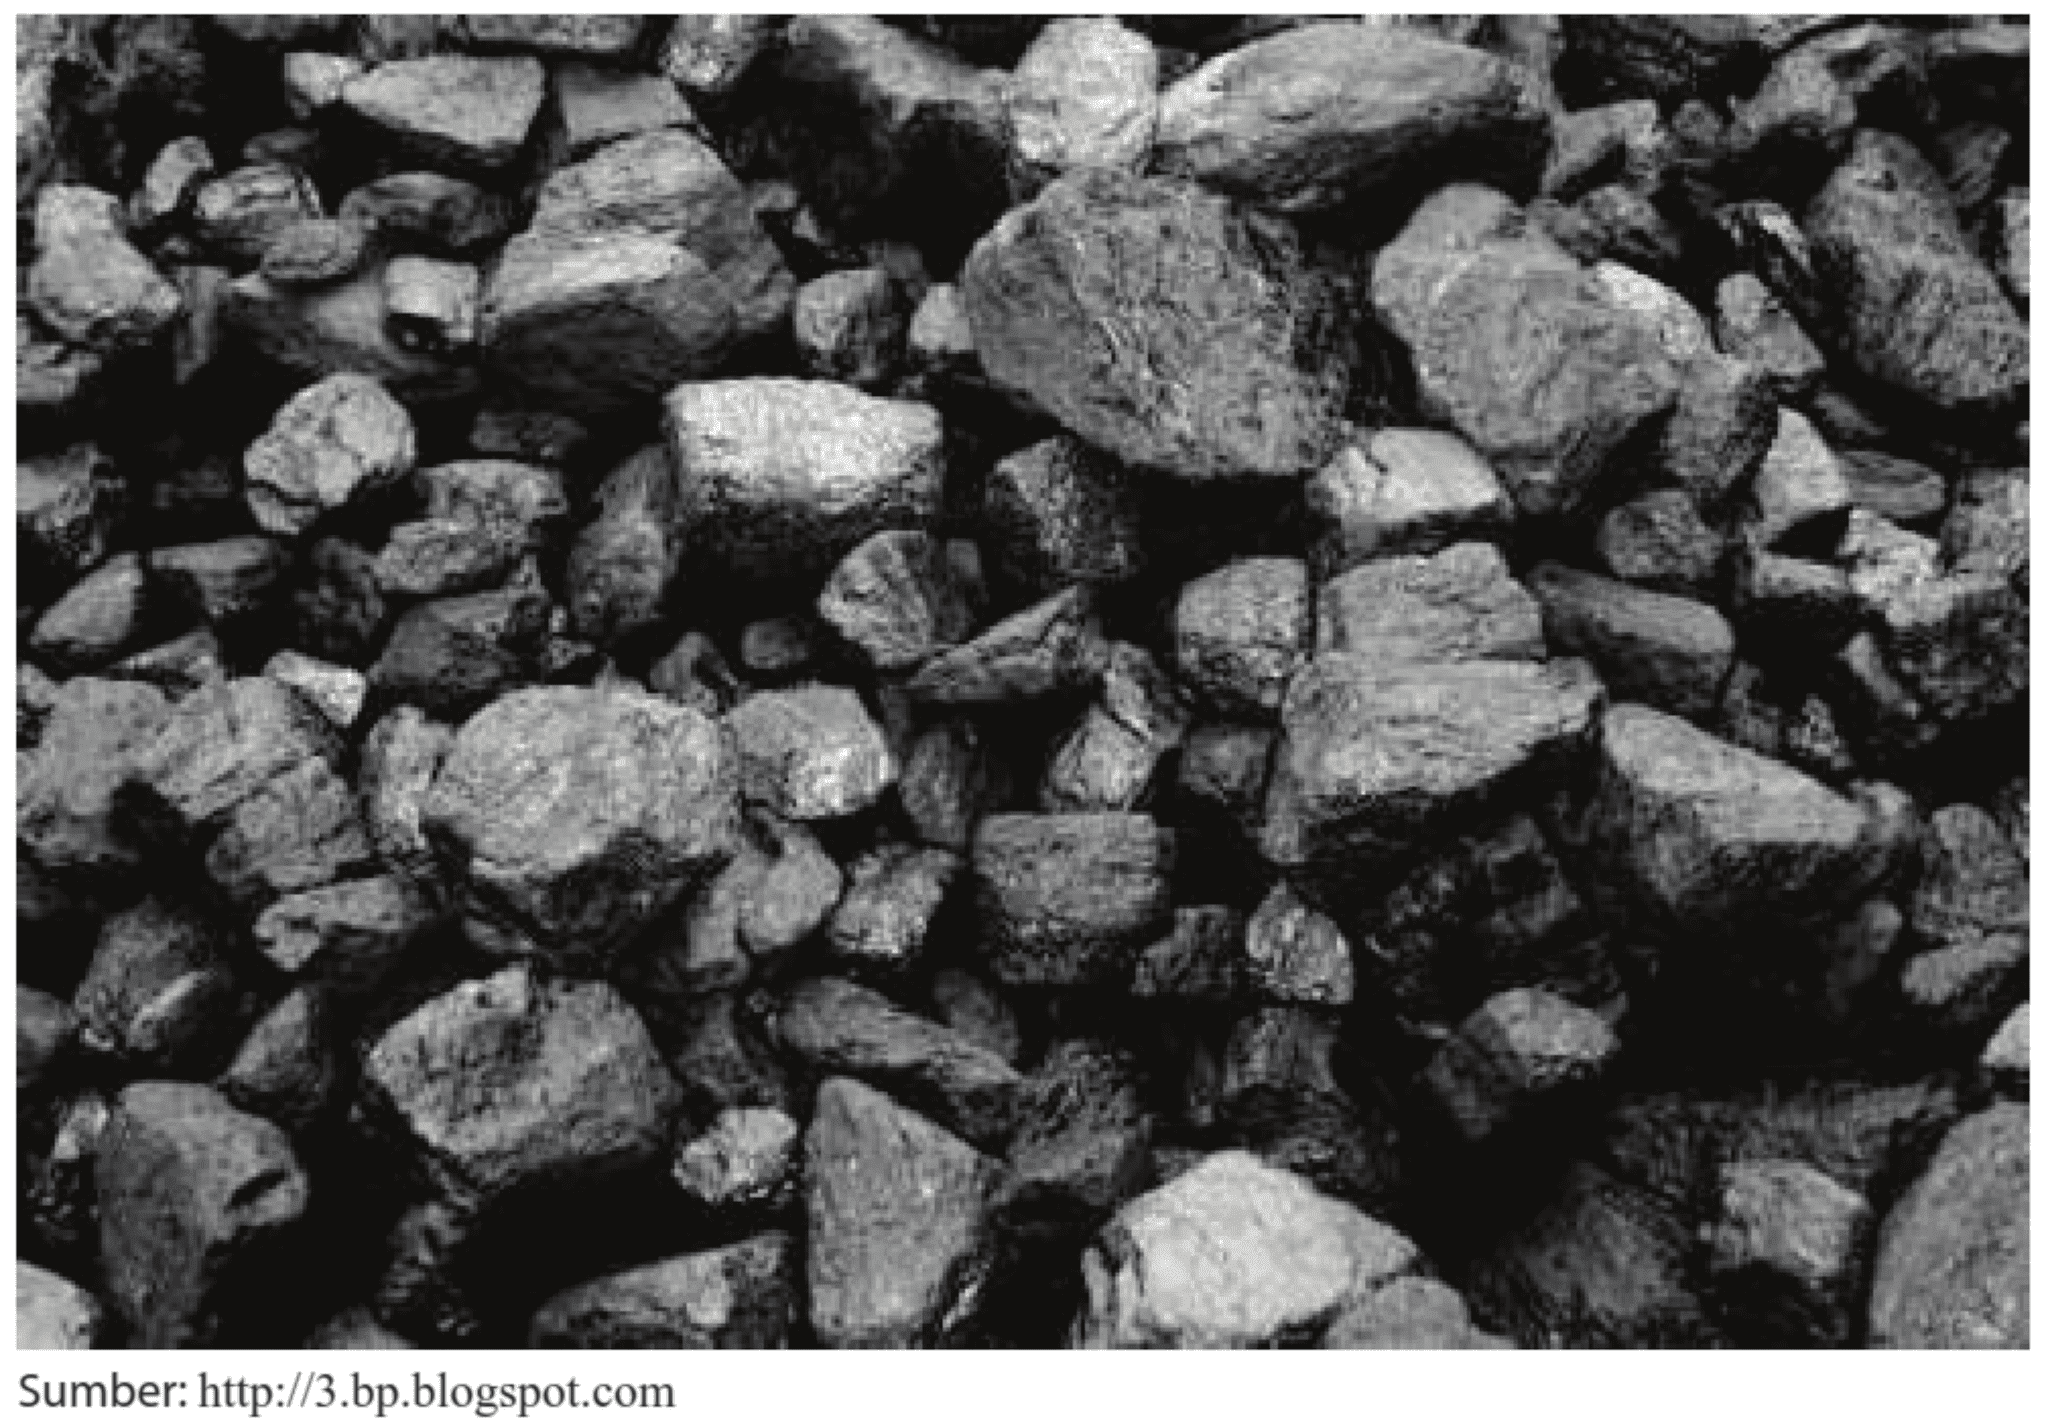 Купить уголь в новосибирске с доставкой